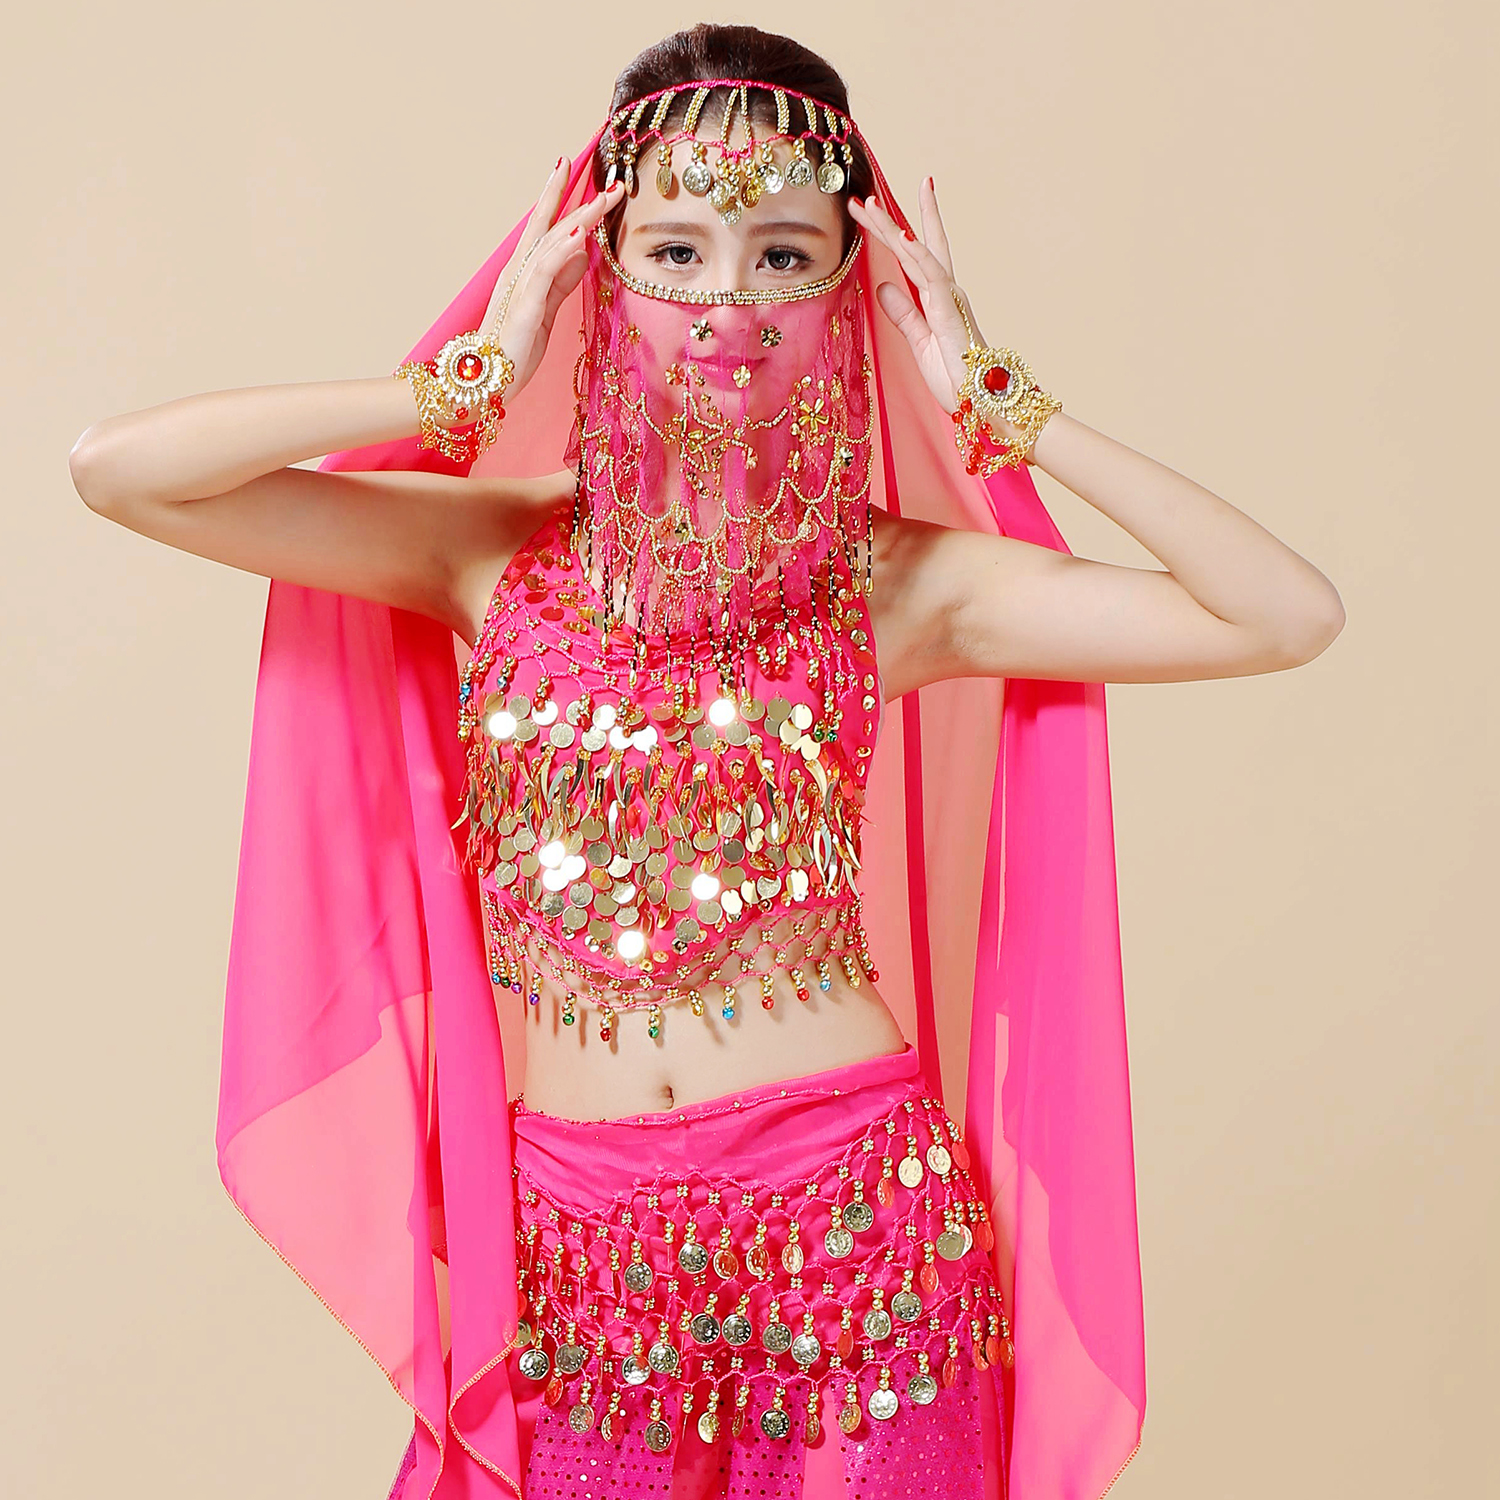 肚皮舞服装印度表演出服面纱舞蹈演出配饰品项链上衣手链头饰纱巾